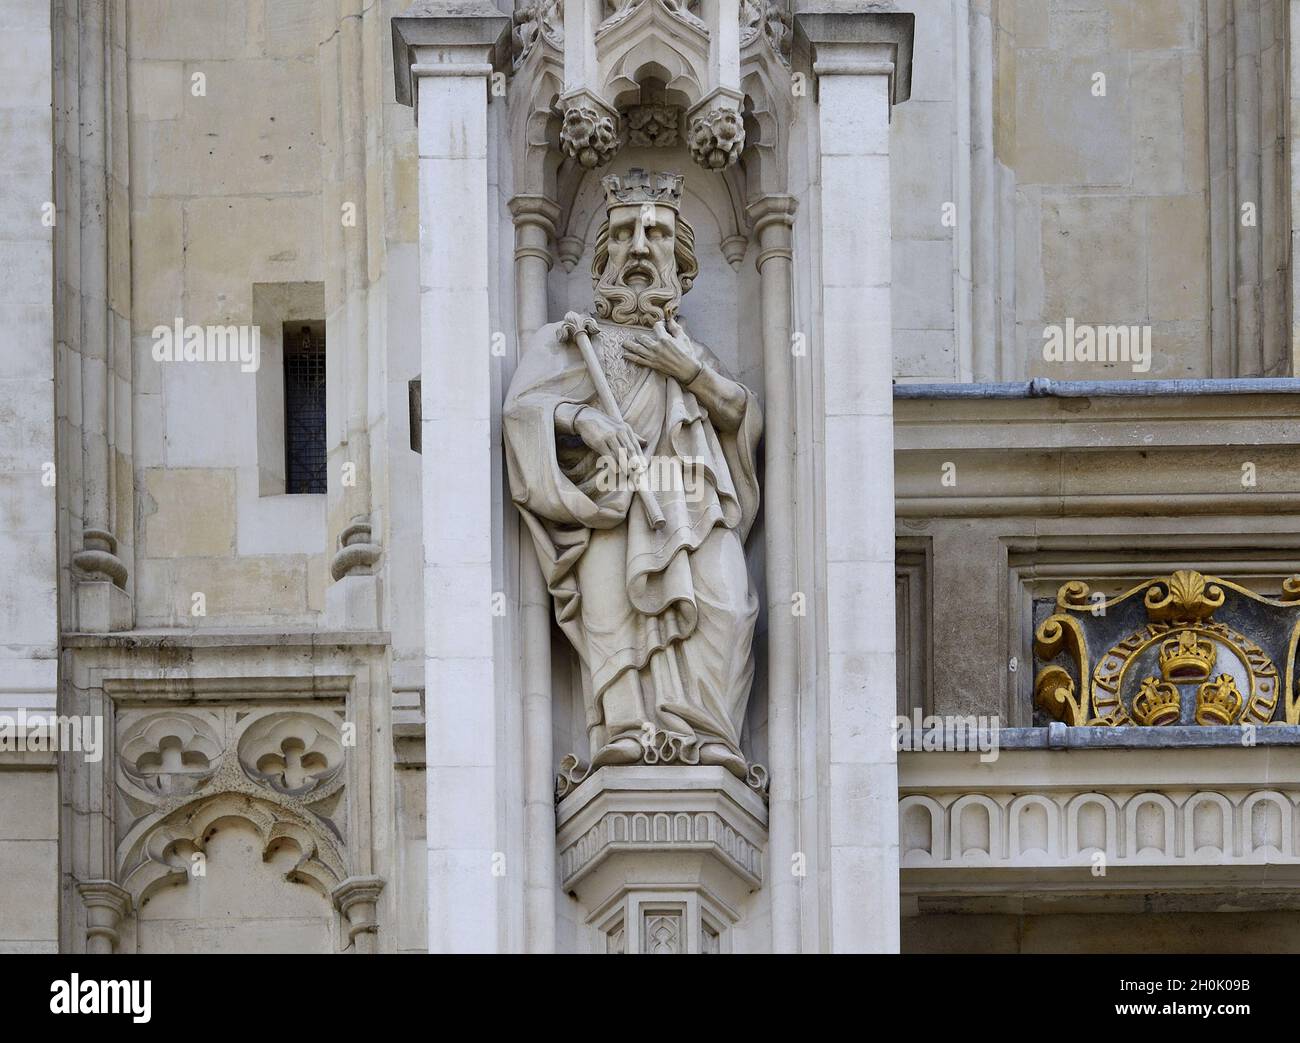 London, England, Großbritannien. Westminster Abbey - Statue über dem Haupteingang. St. Edward der Beichtvater Stockfoto